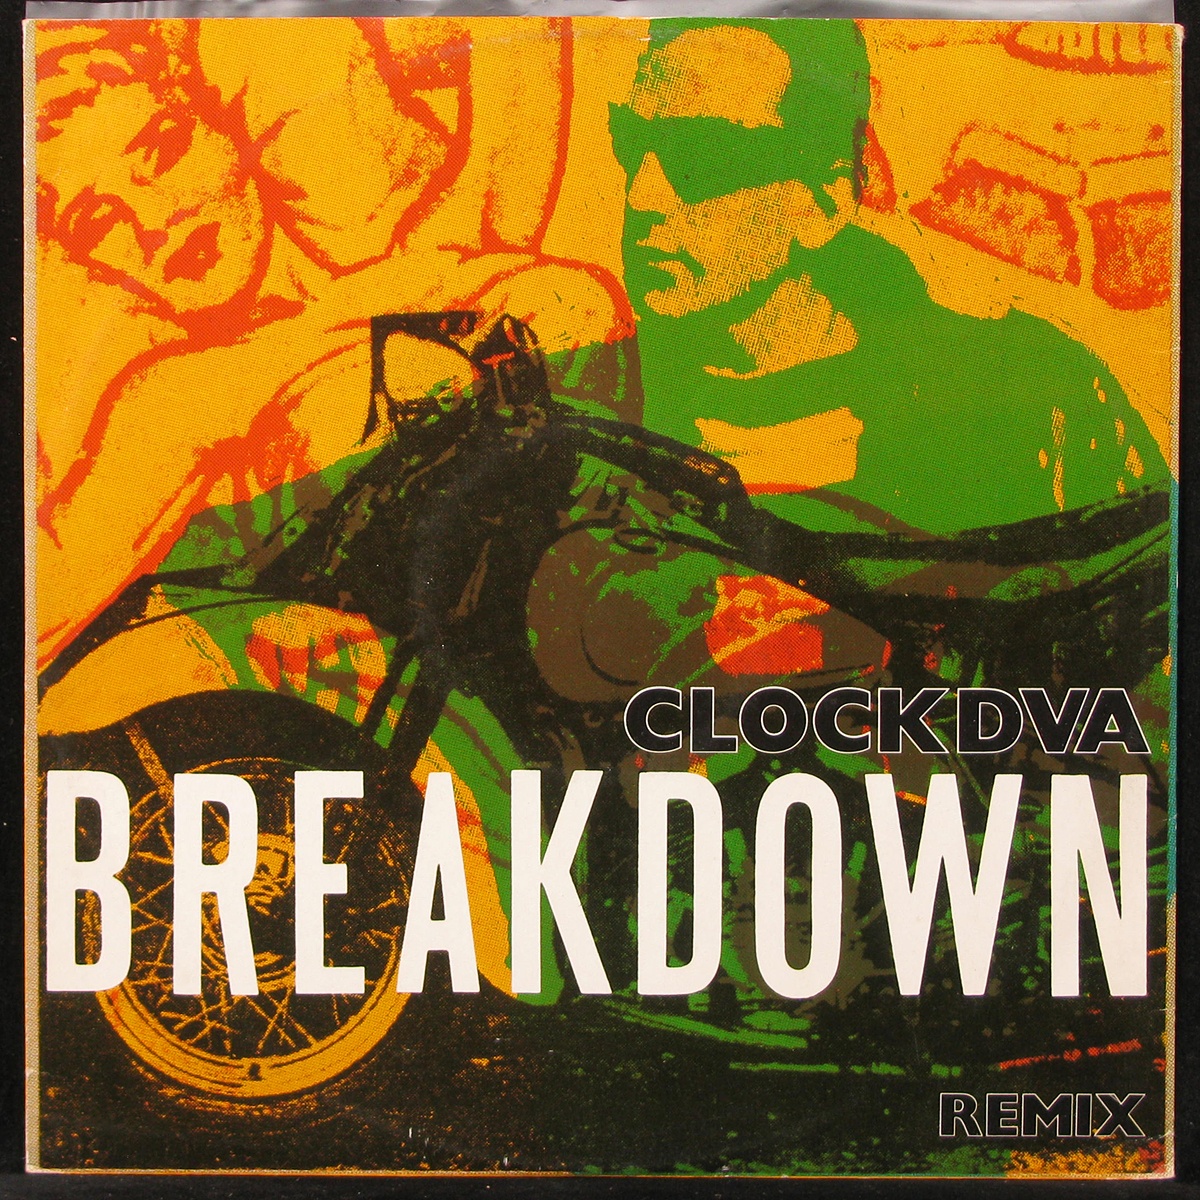 LP Clock DVA — Breakdown (Remix) (maxi) фото